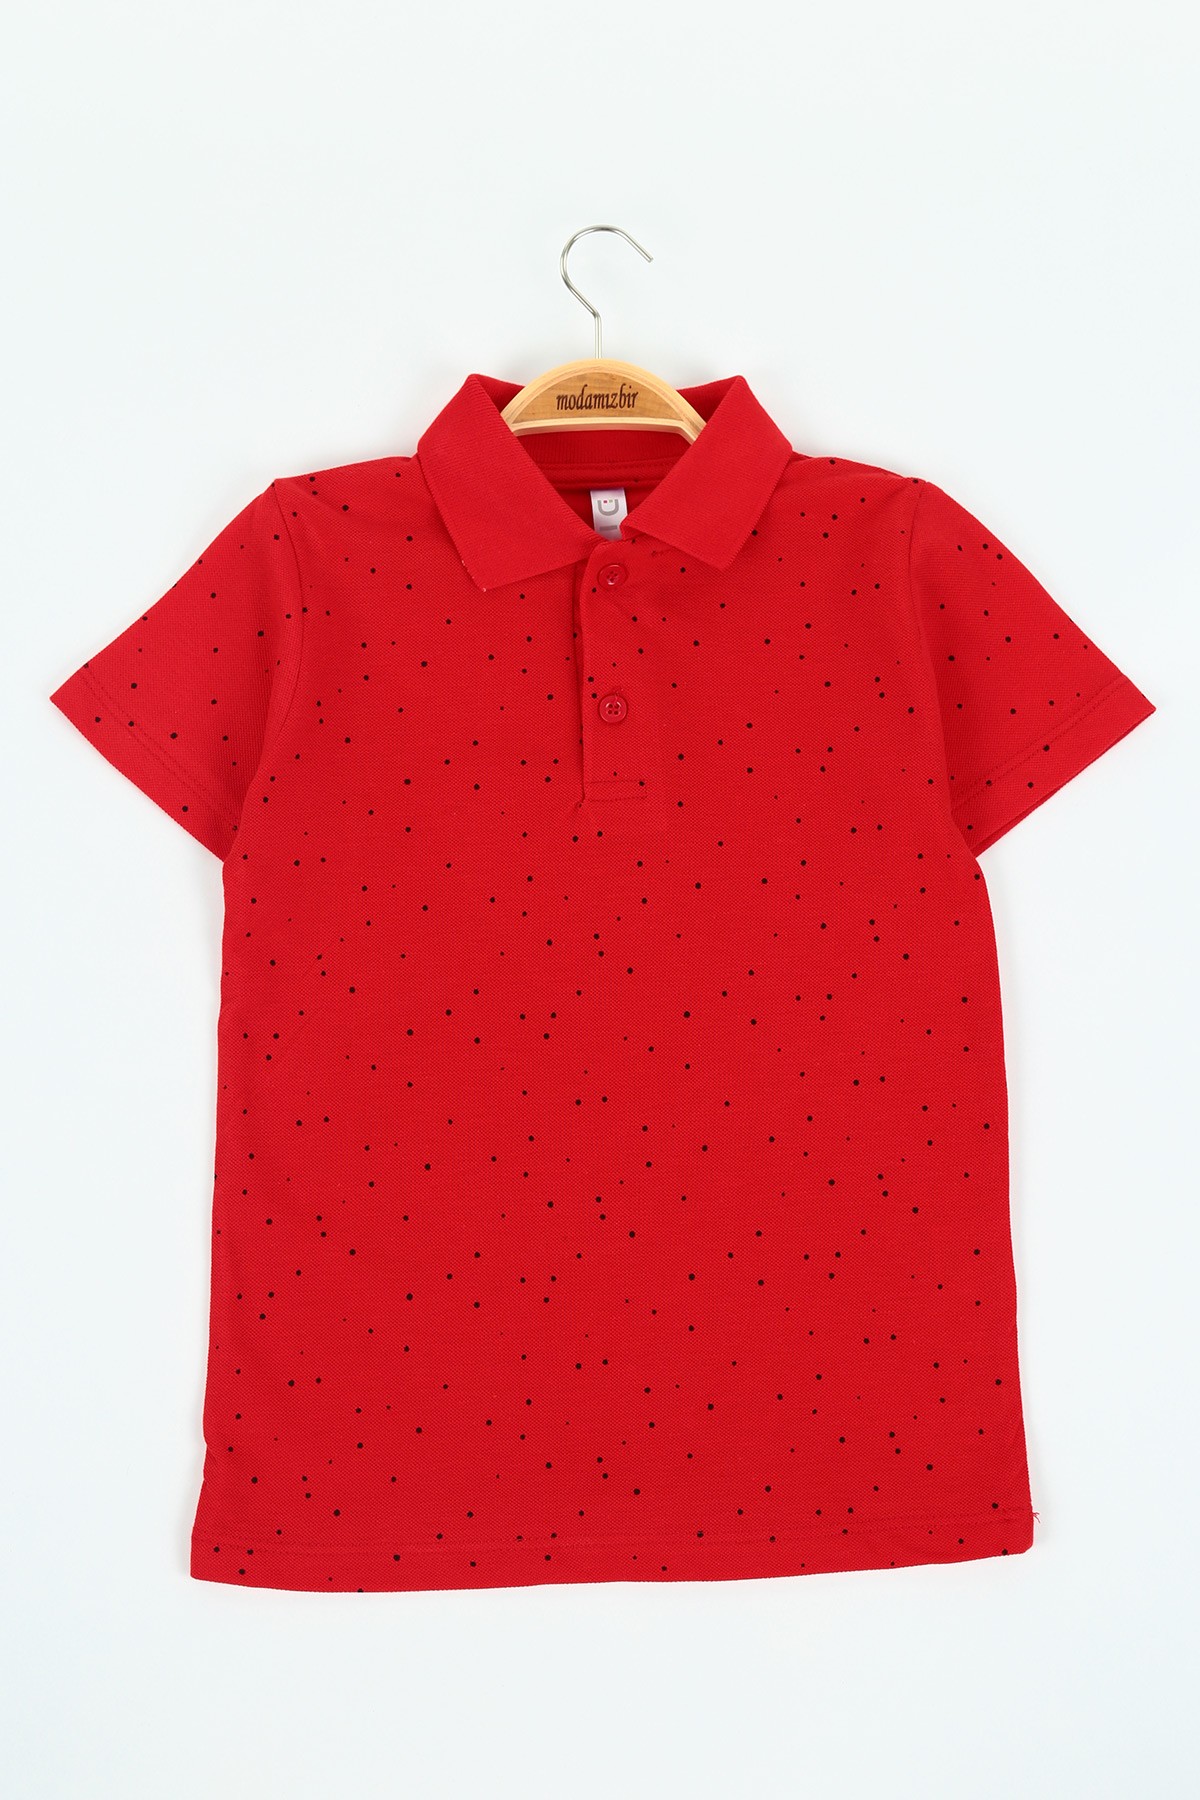 Kırmızı (5-8 yaş) Puanlı Polo Yaka Erkek Çocuk Tişört 116390